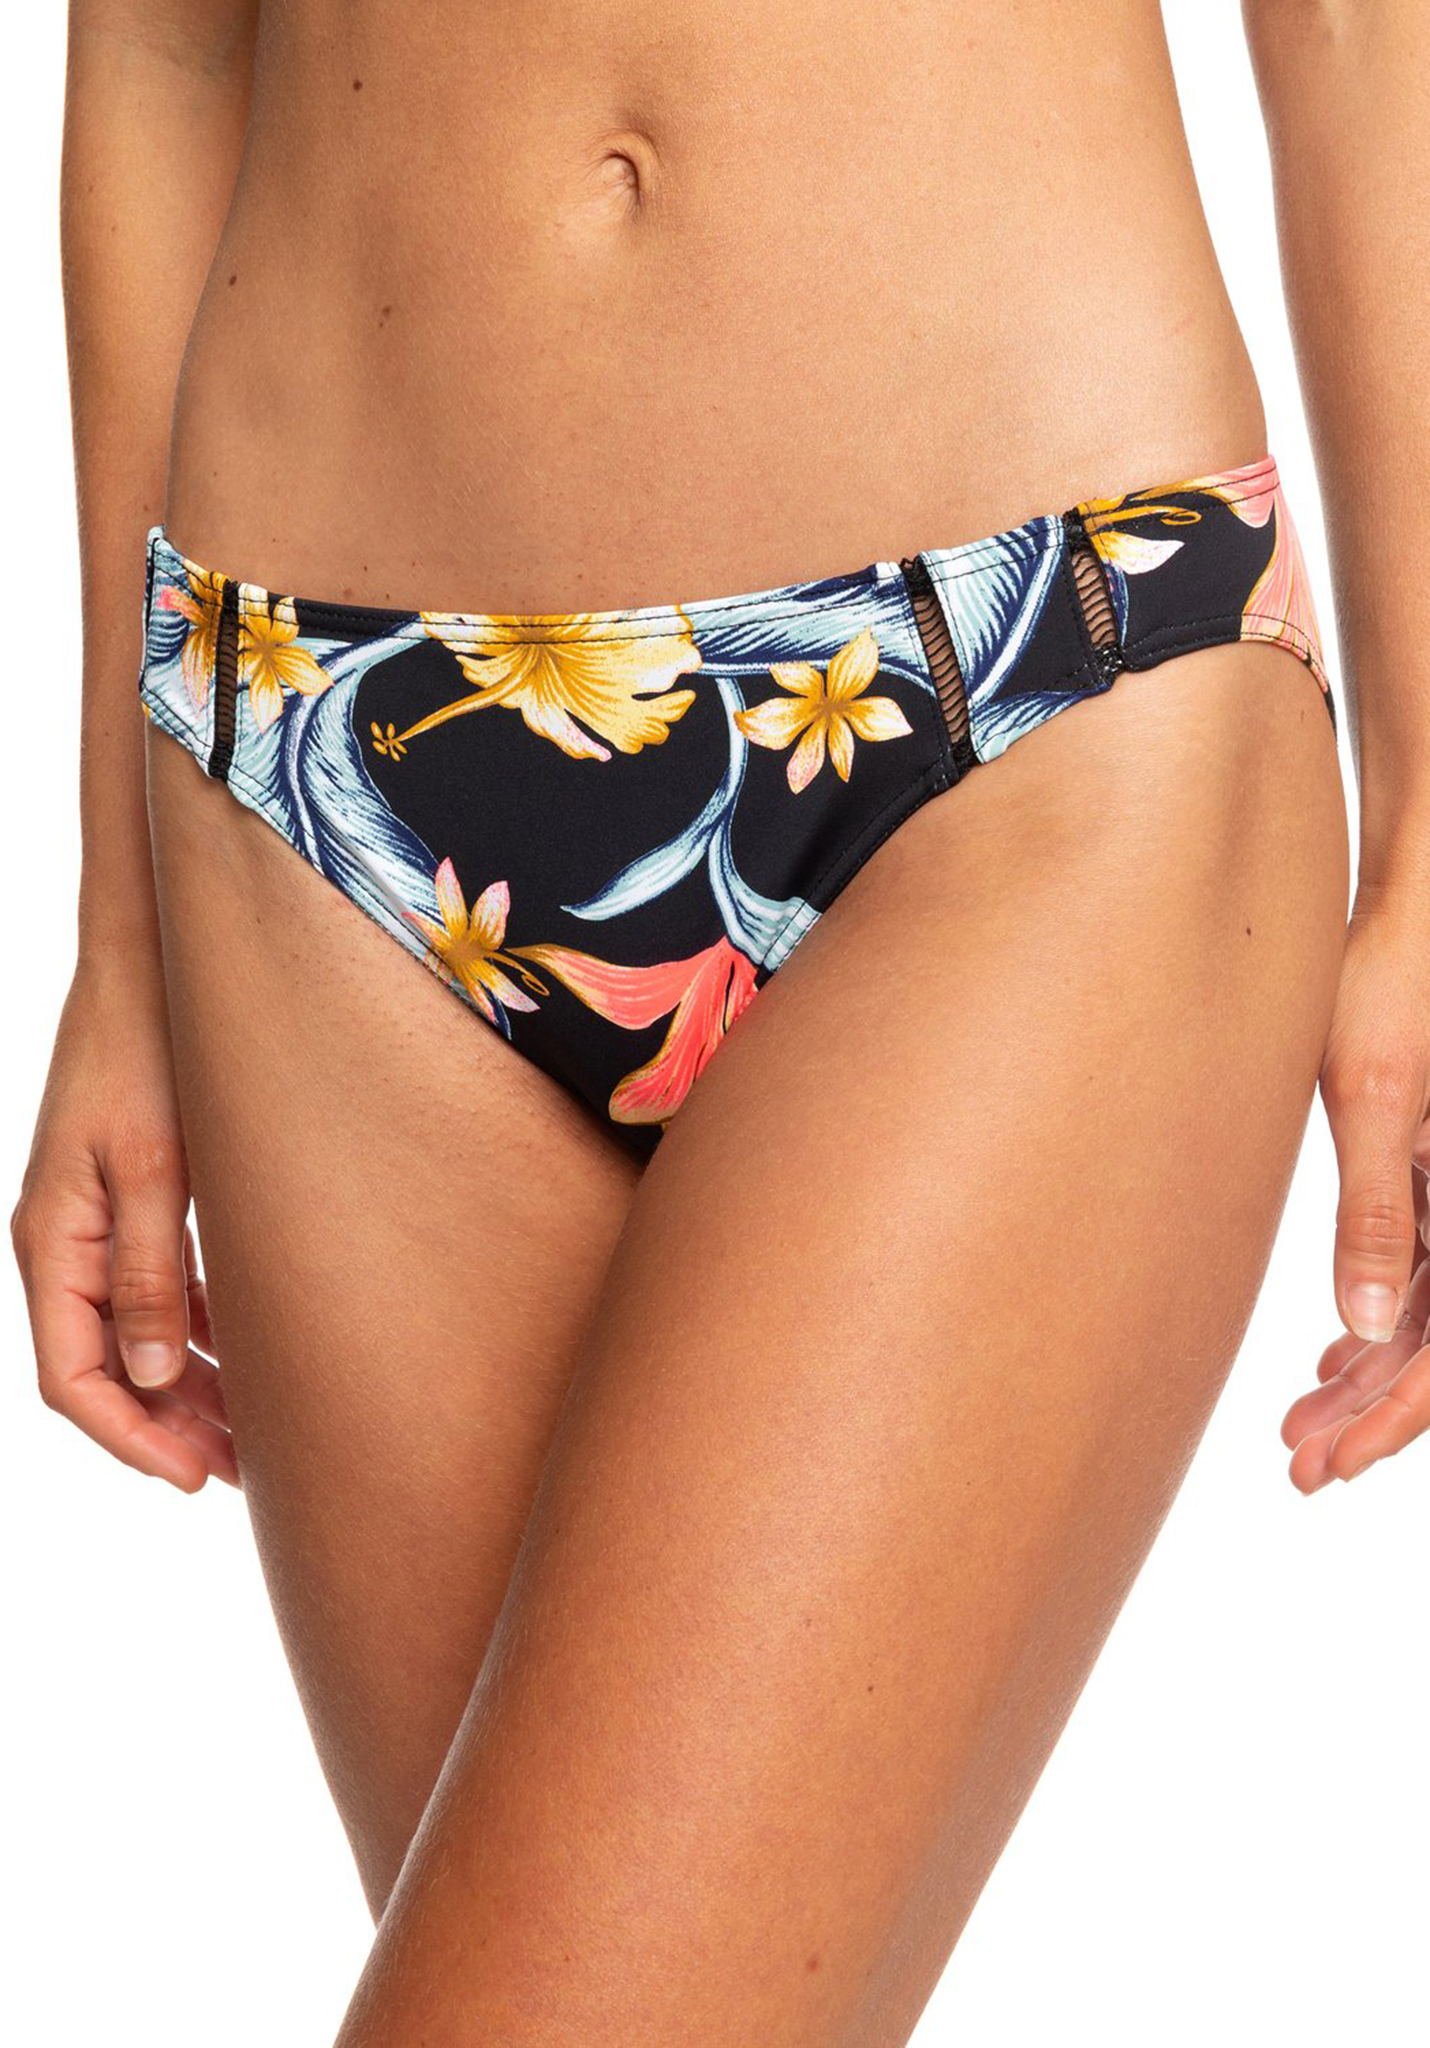 Roxy Dreaming Day Full Bikinihosen anthrazit tropische liebe s L